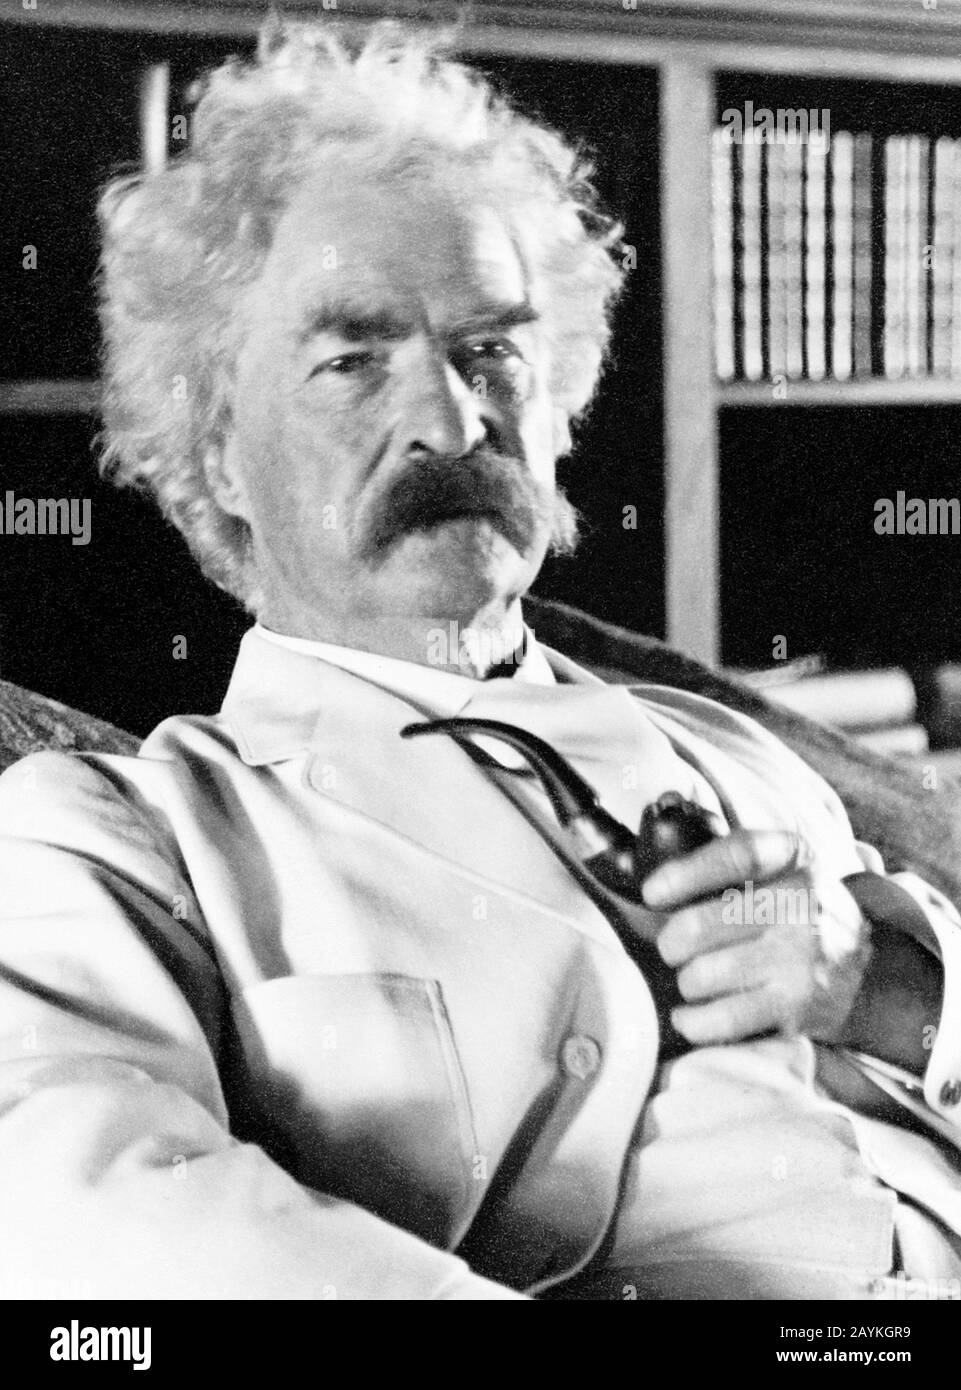 Ritratto d'epoca di scrittore americano e umorista Samuel Langhorne Clemens (1835 – 1910), meglio conosciuto dal suo nome di penna di Mark Twain. Foto circa 1905. Foto Stock